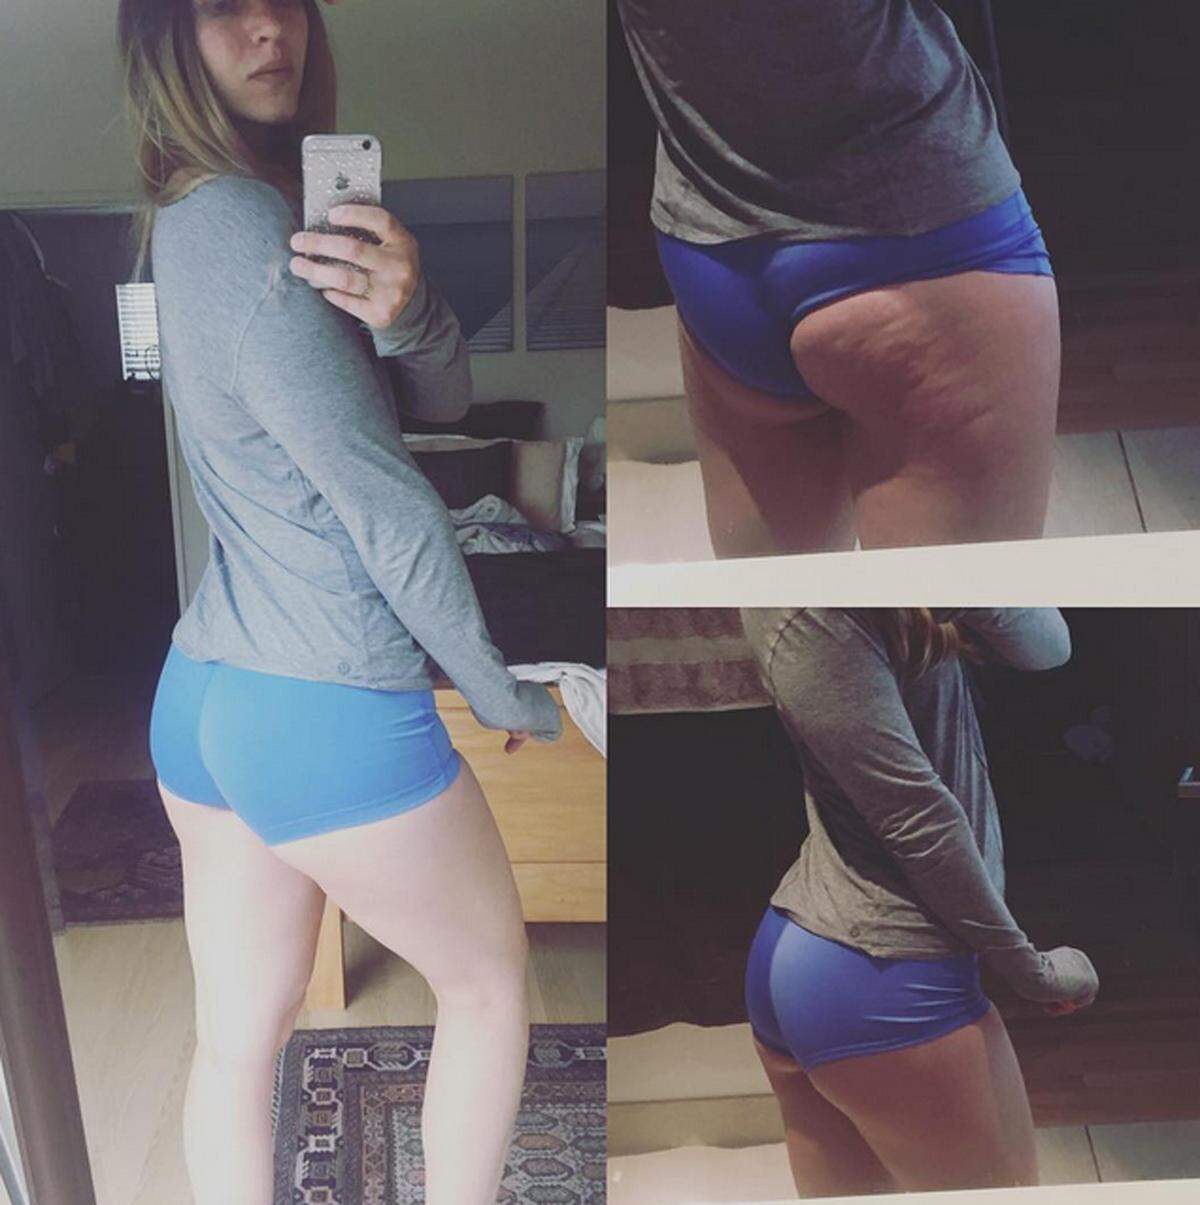 Auch andere Frauen, die sich für ein positives Körpergefühl einsetzen, folgen dem Beispiel der Kanadierin. "Ist es seltsam, dass ich mich den ganzen Tag darauf gefreut habe ein Bild von meiner Cellulite zu posten?", schreibt etwa diese Userin.